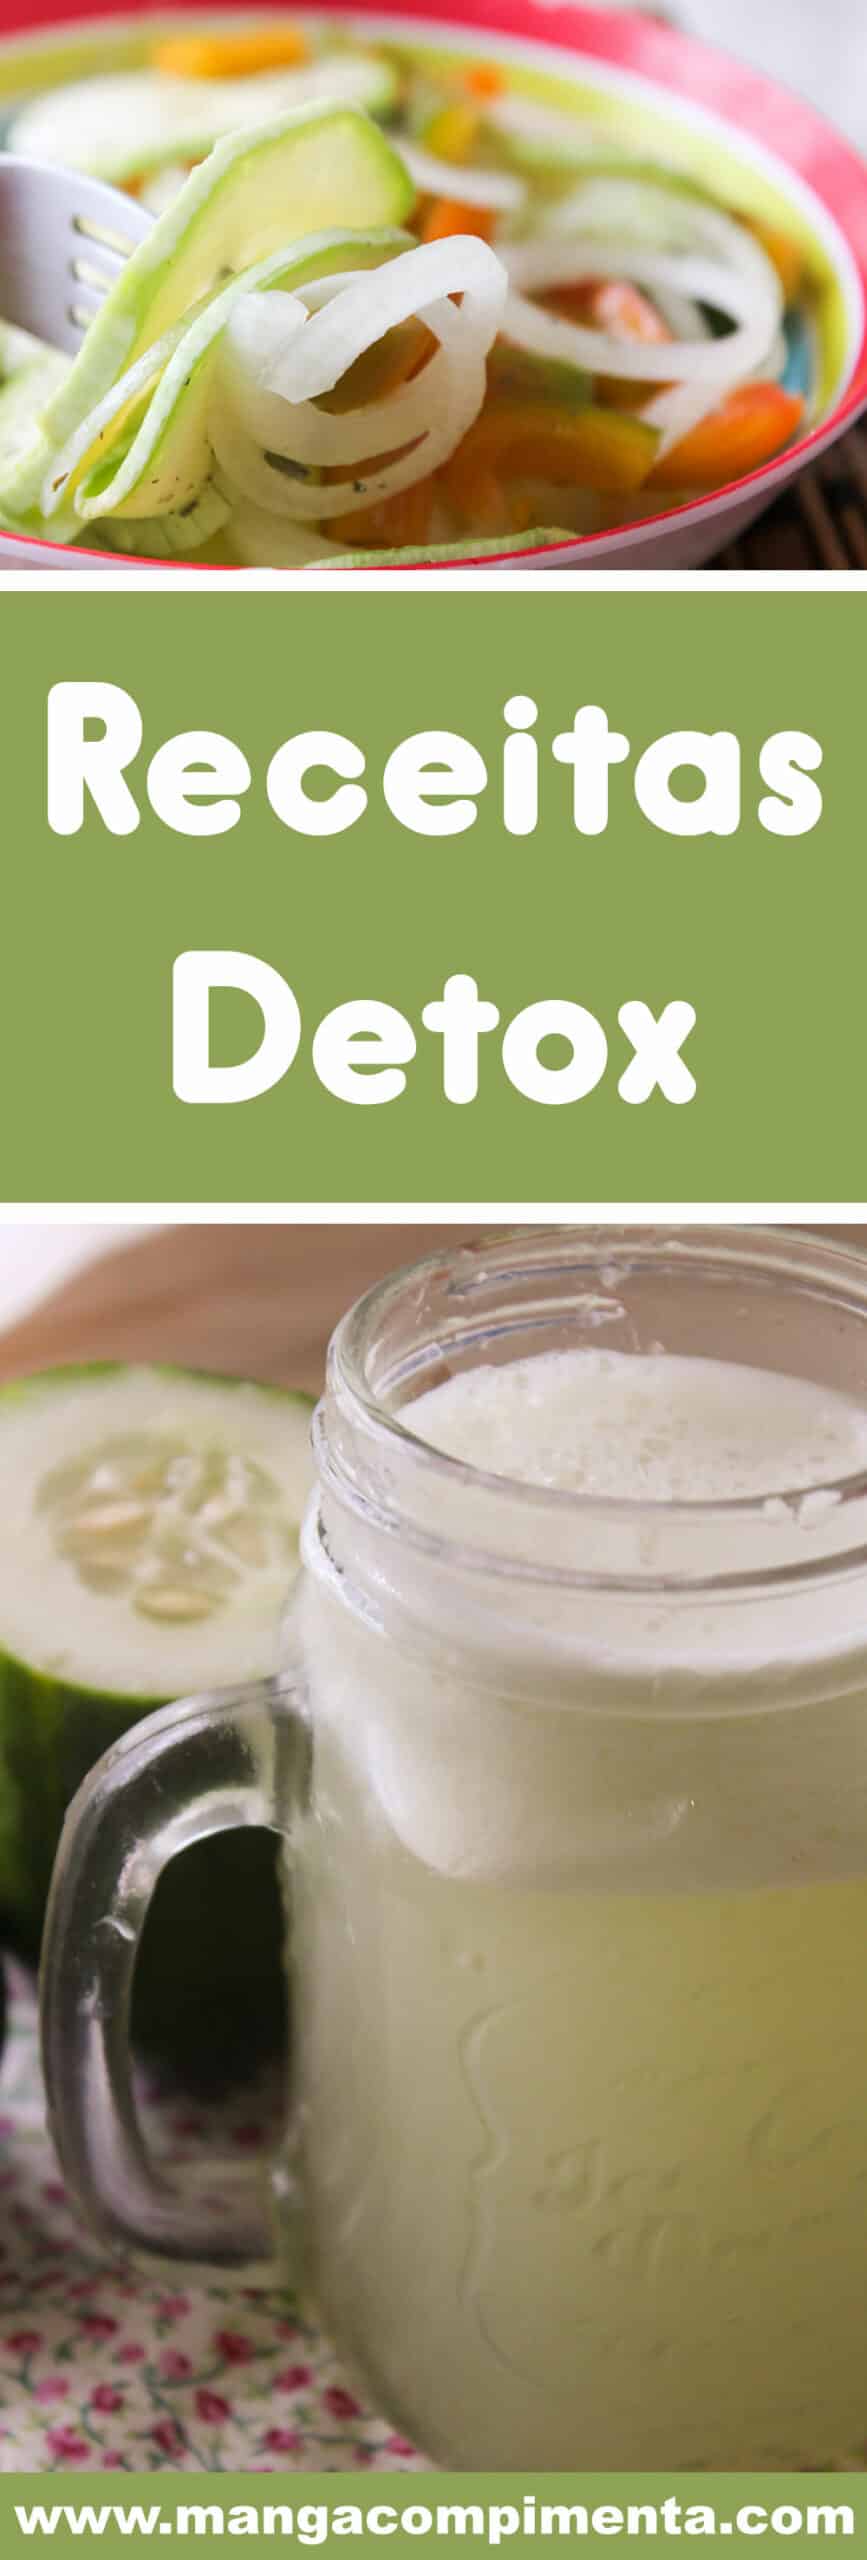 Conheça 20 Receitas Detox - comece o ano cuidando de você com pratos deliciosos!